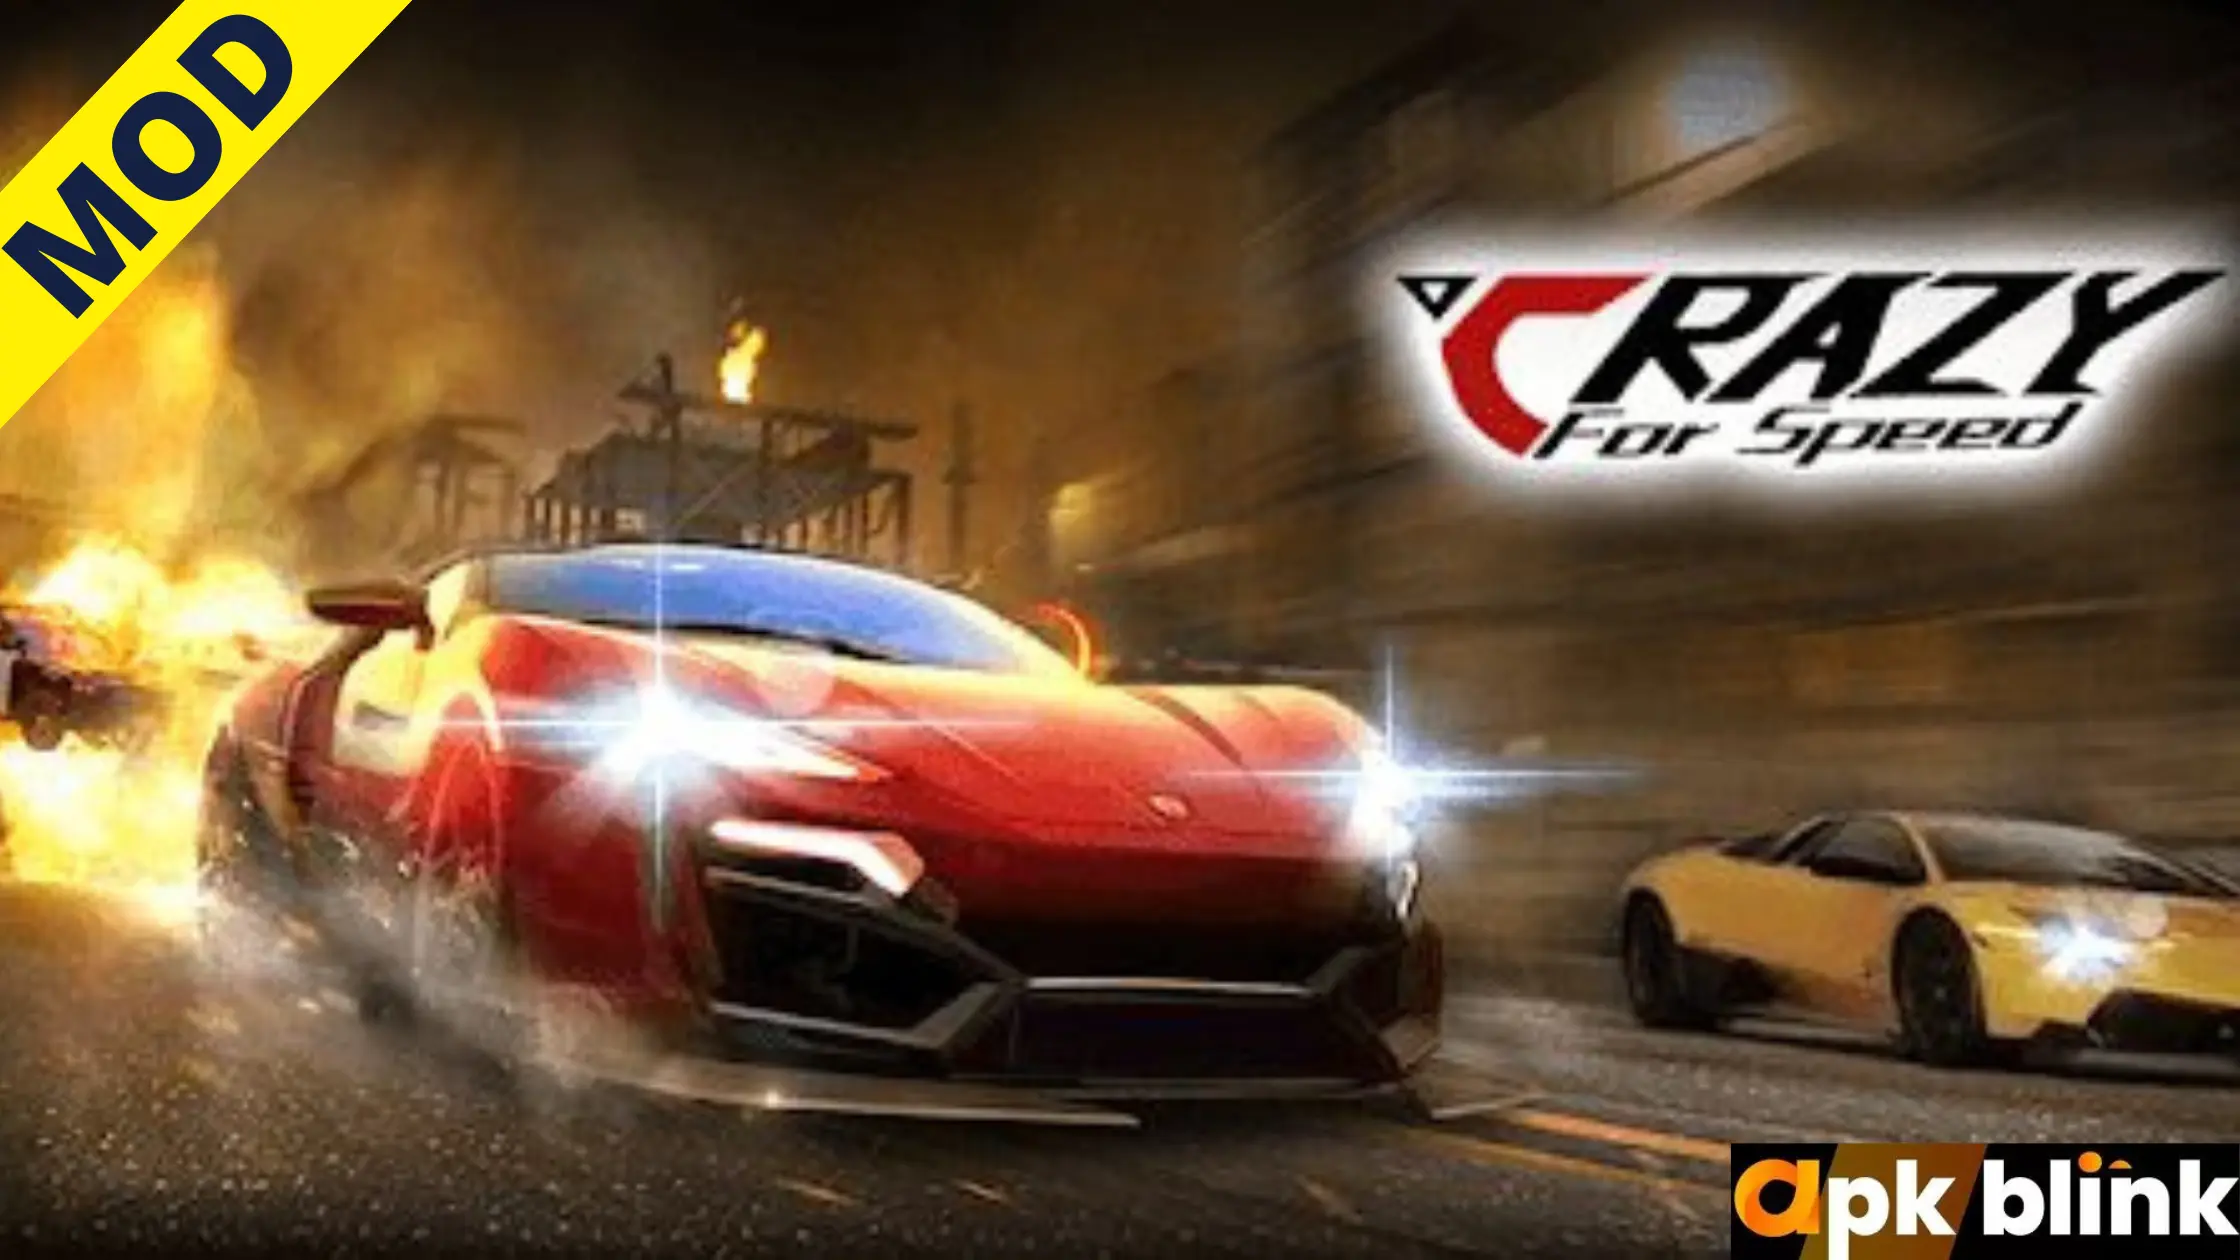 Crazy For Speed Mod APK